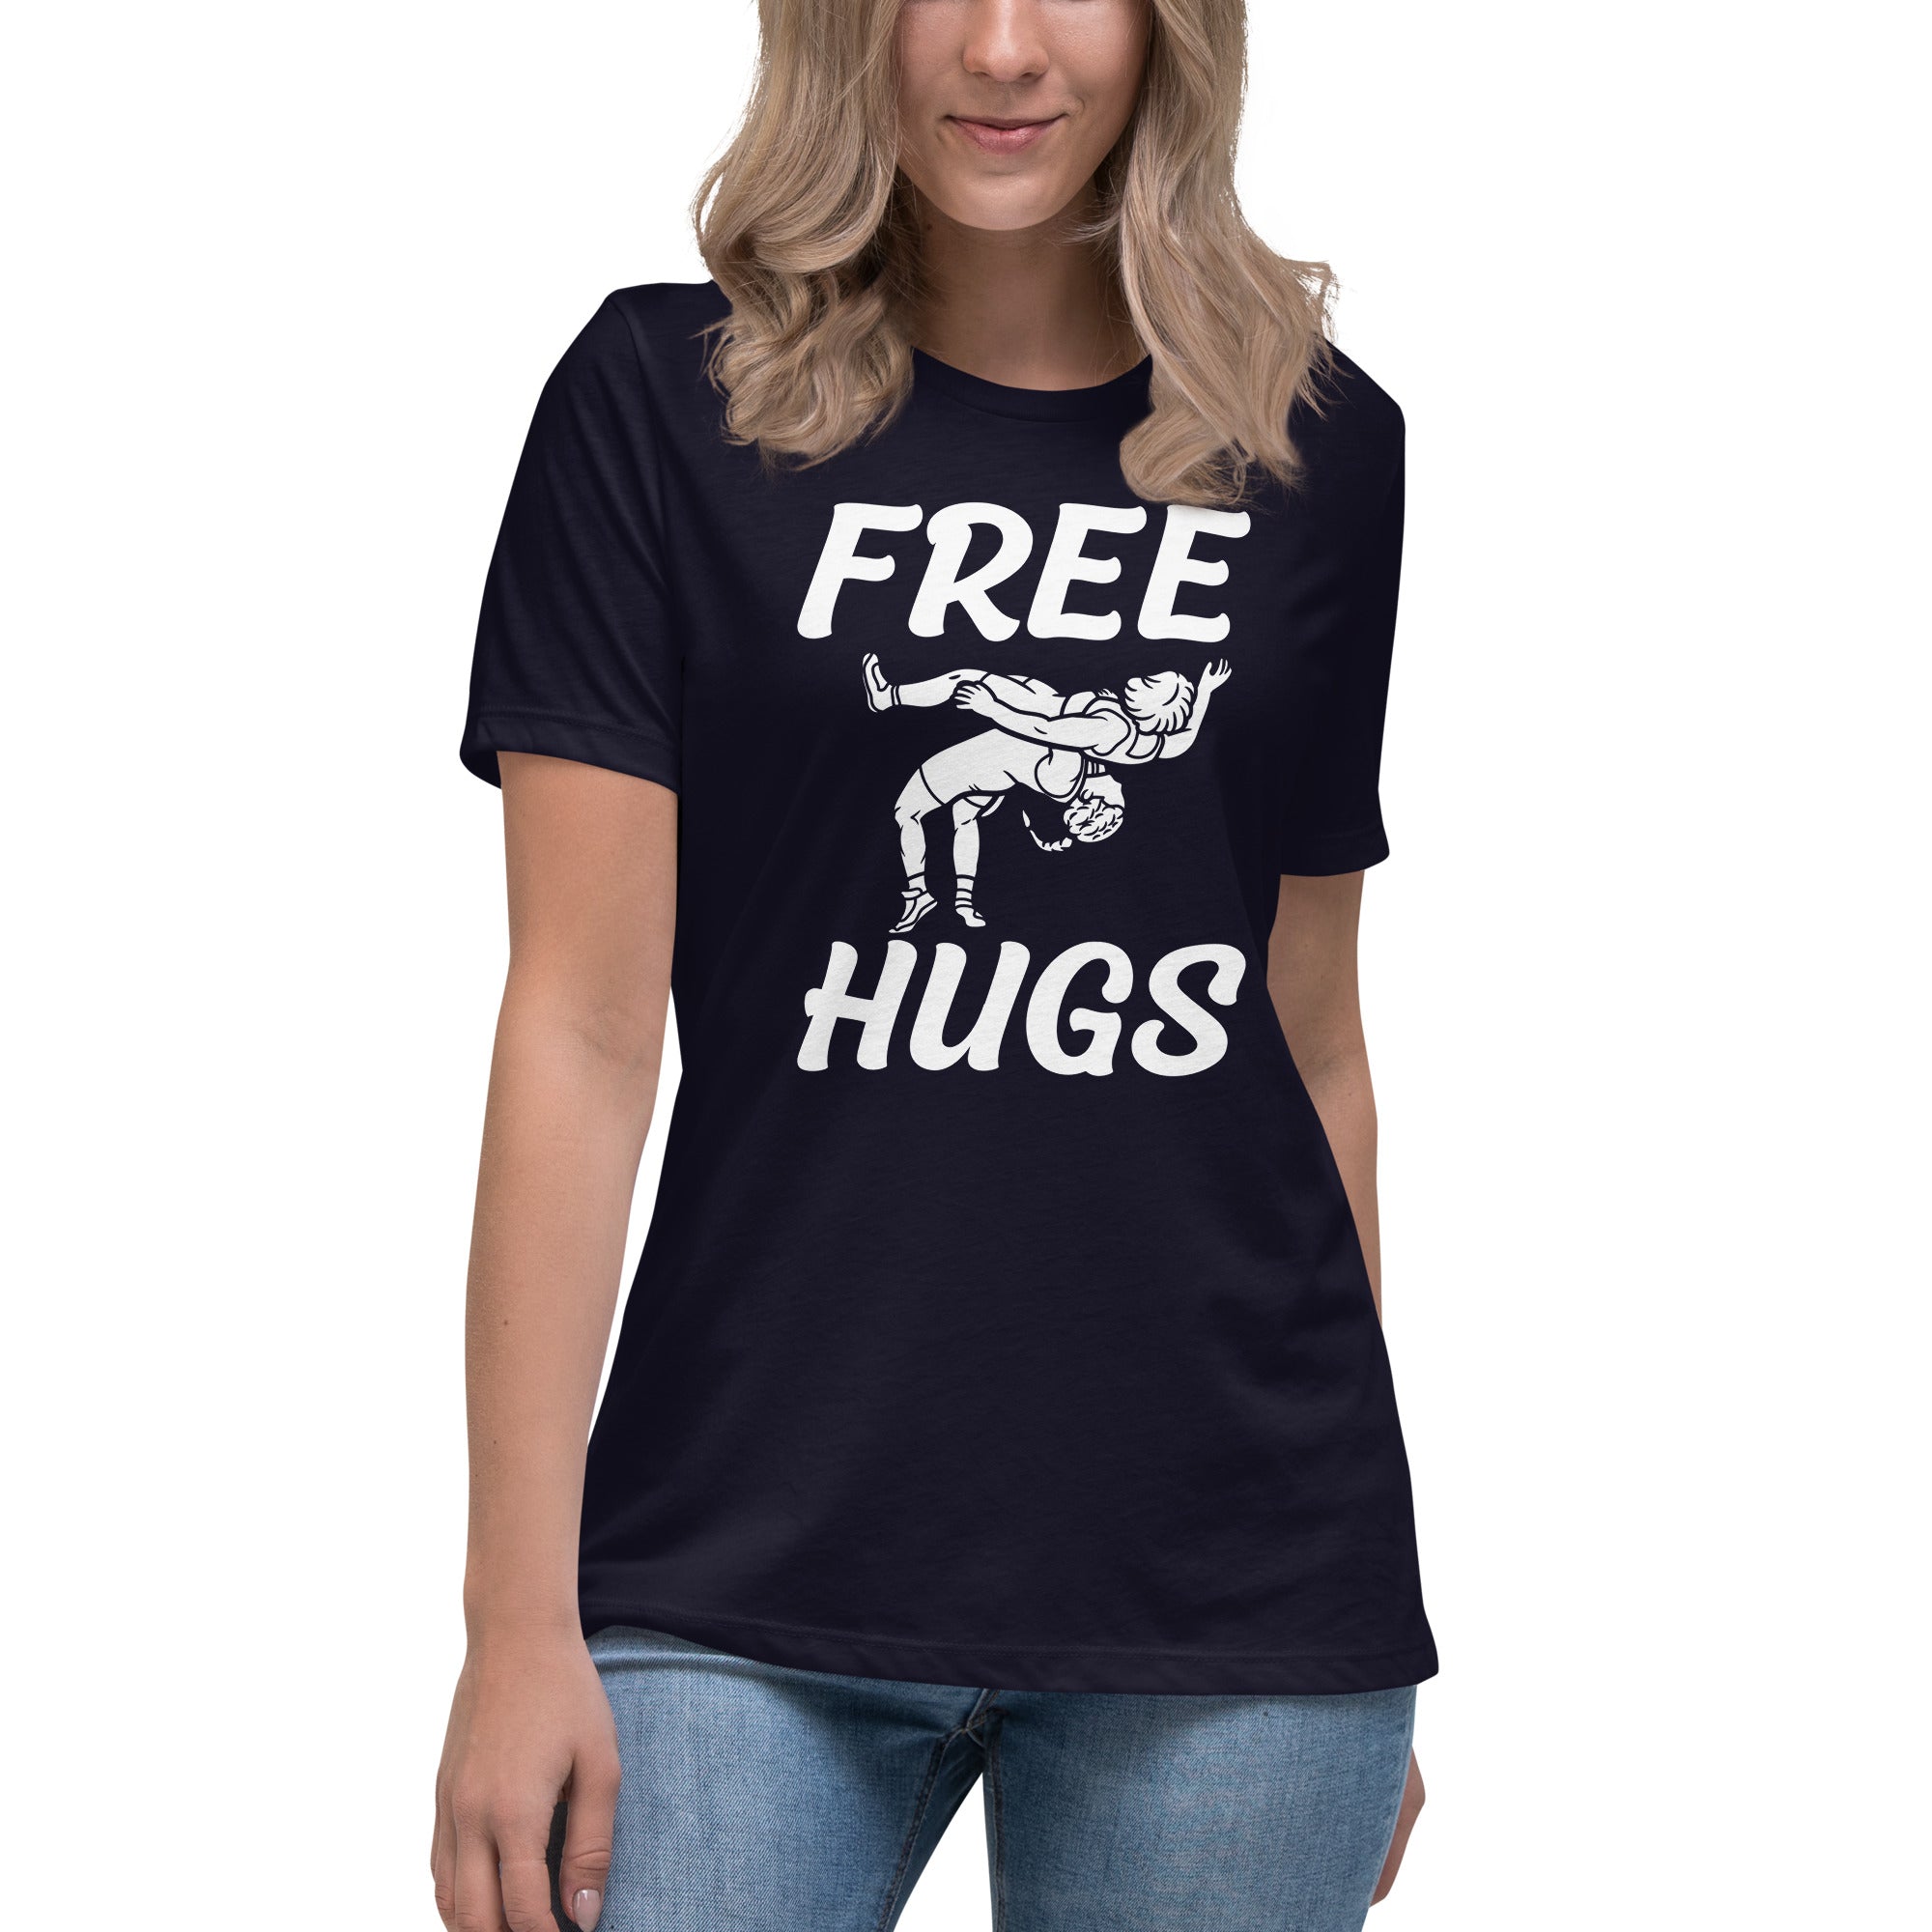 "Free Hugs" Women’s Relaxed T-Shirt